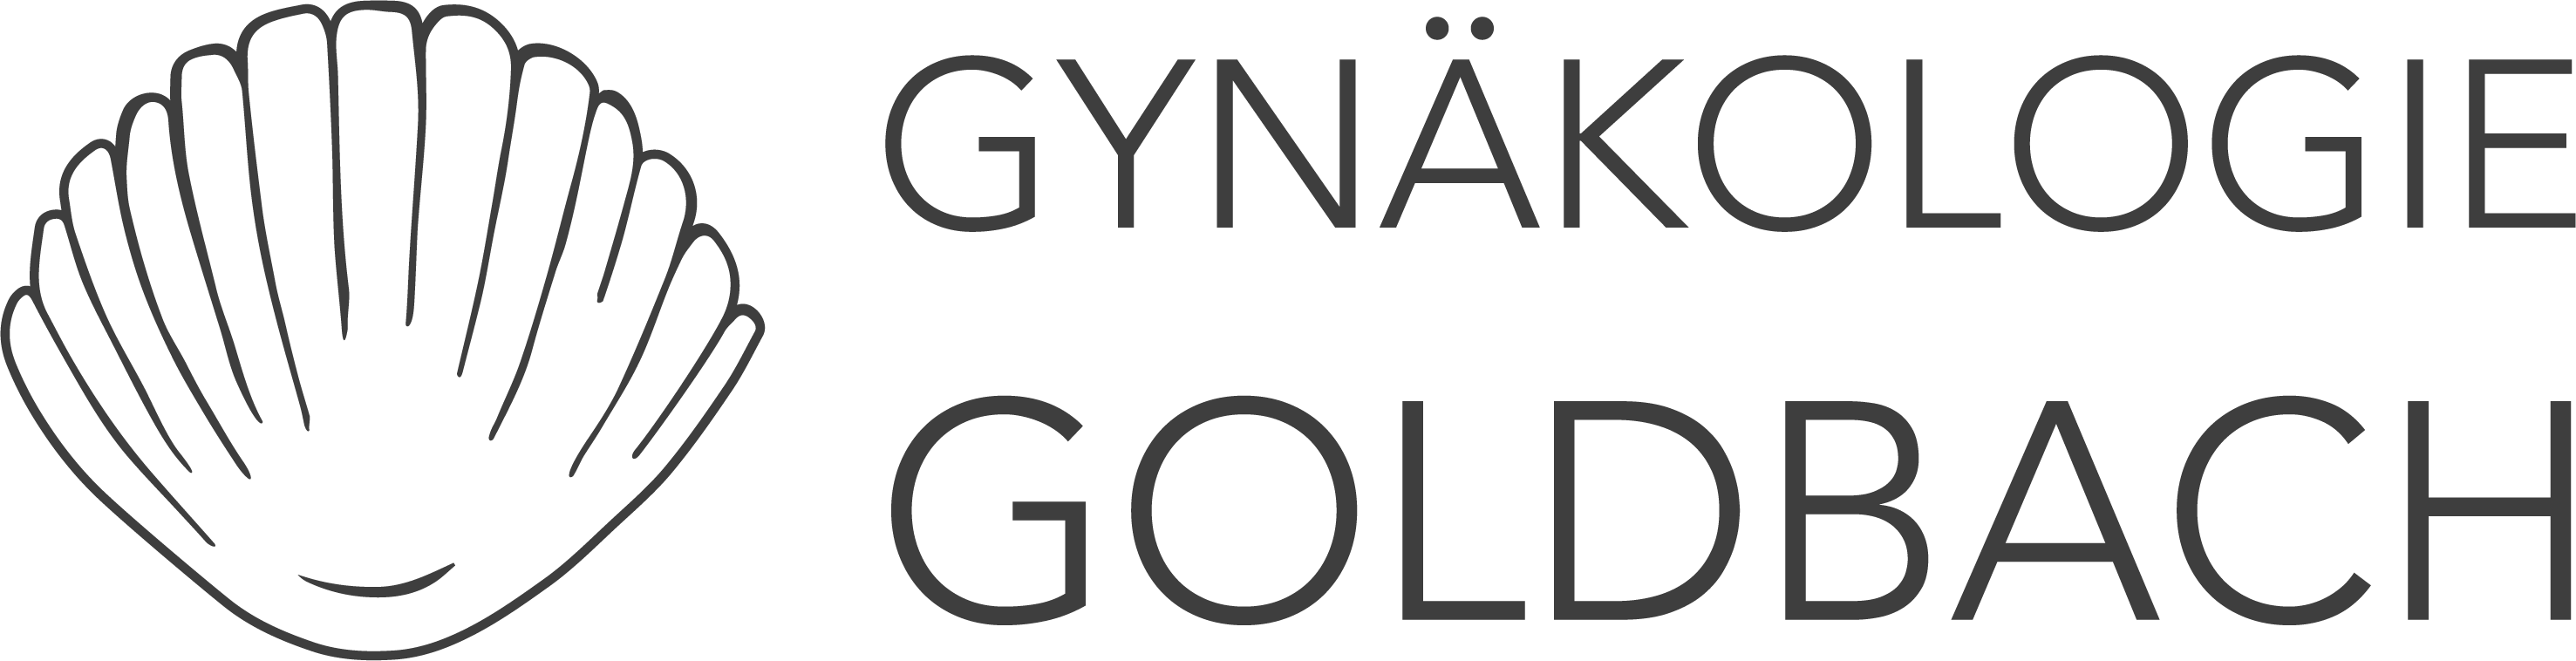 Gynaekologie Goldbach Grey